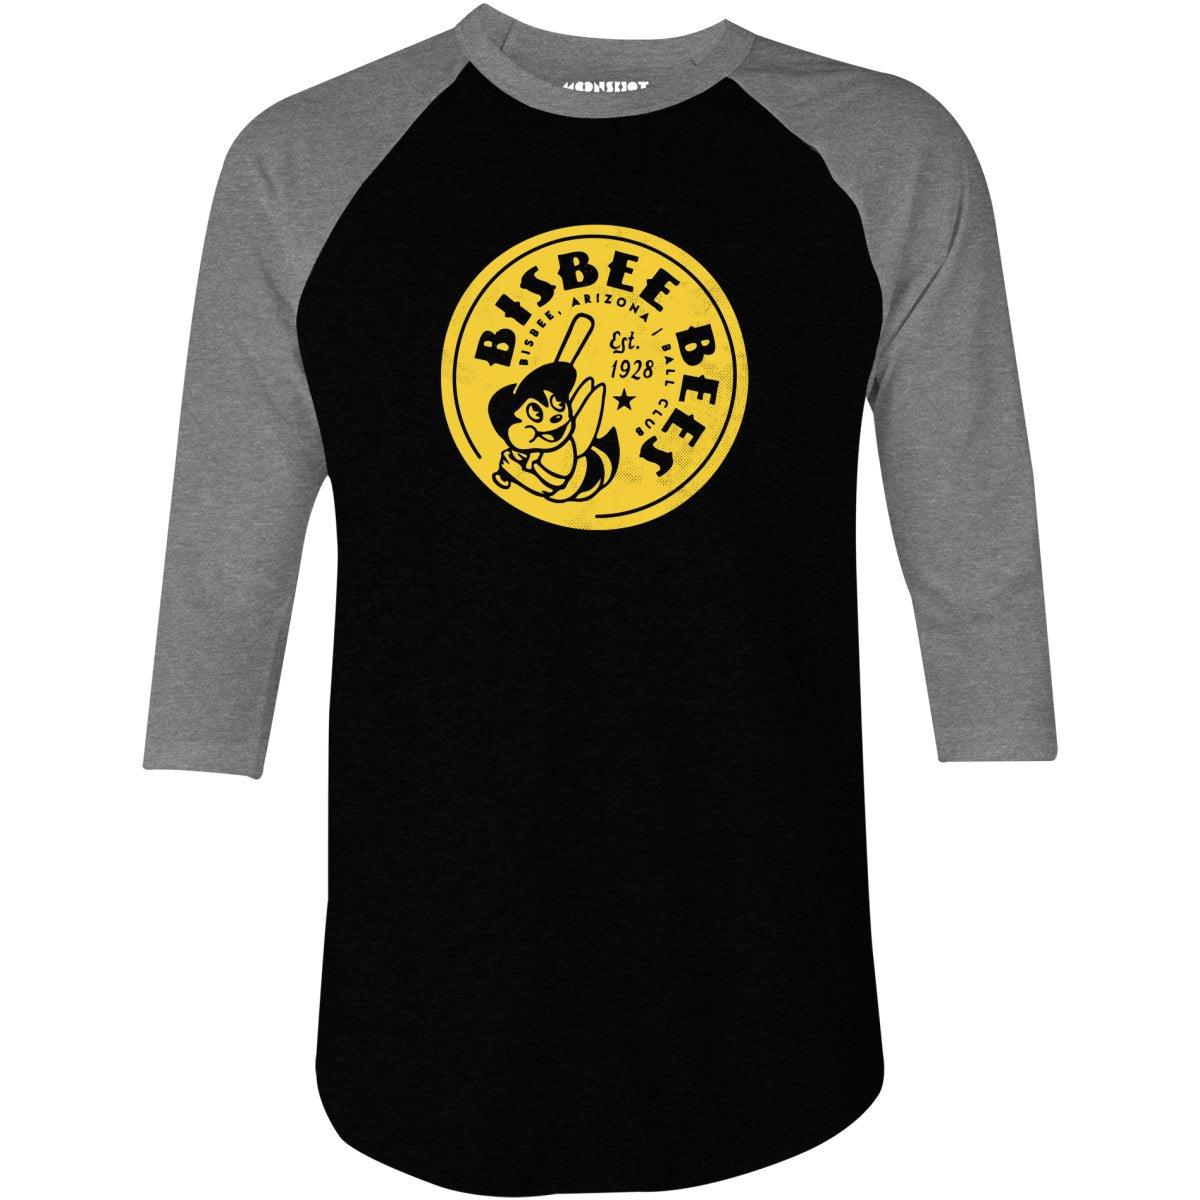 Bisbee Bees - Arizona - Vintage Defunct Baseball Teams - 3/4 Sleeve Raglan T-Shirt